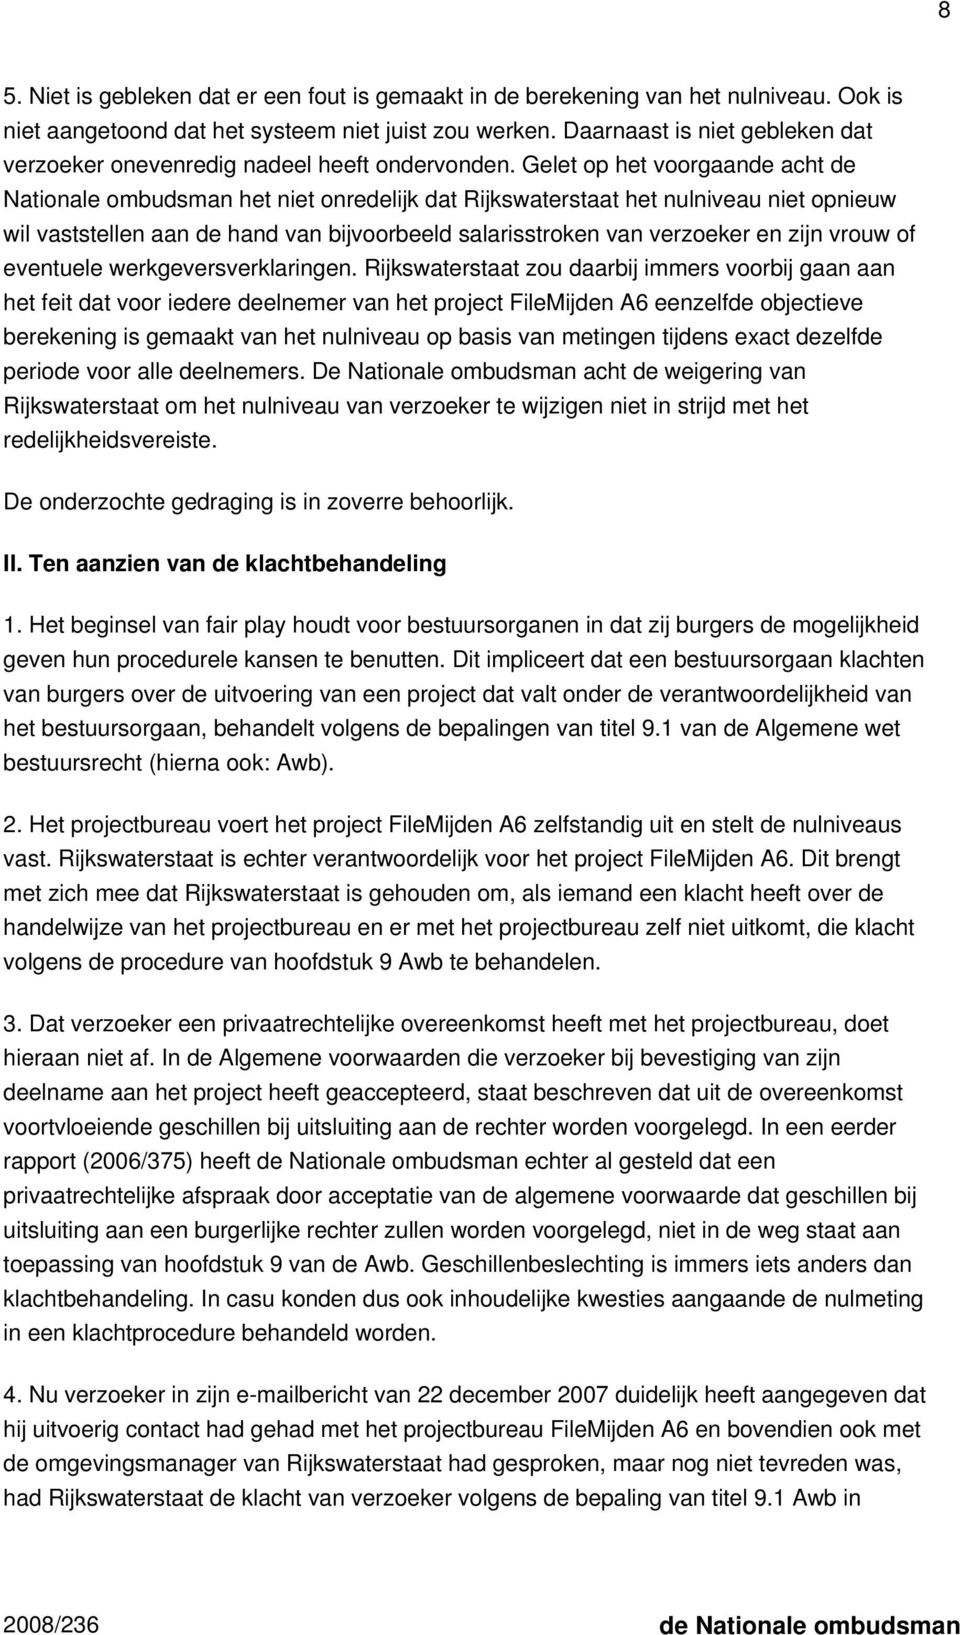 Gelet op het voorgaande acht de Nationale ombudsman het niet onredelijk dat Rijkswaterstaat het nulniveau niet opnieuw wil vaststellen aan de hand van bijvoorbeeld salarisstroken van verzoeker en